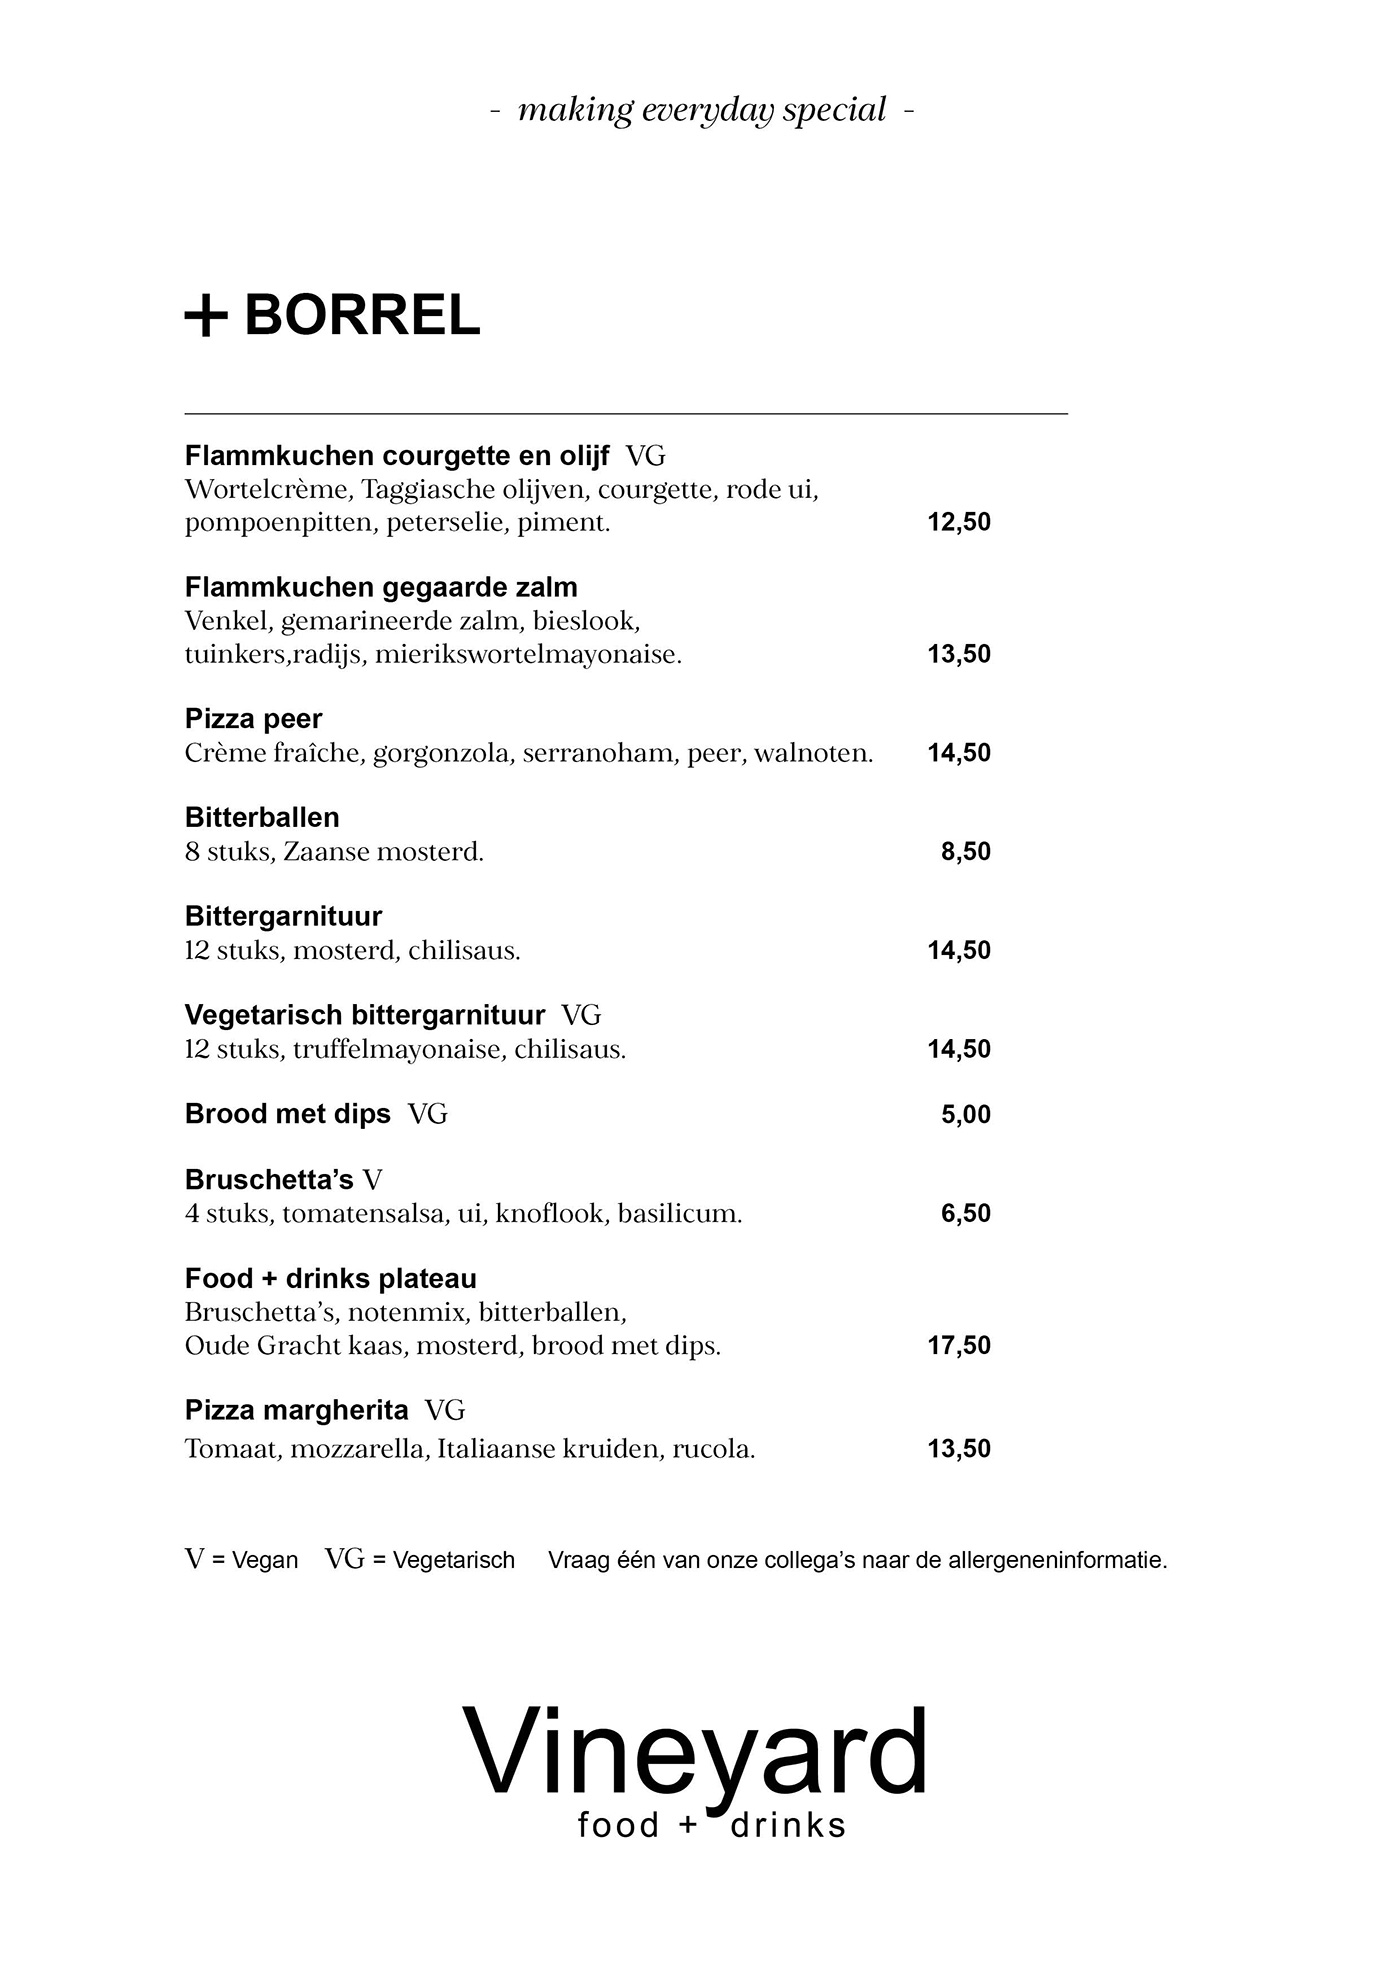 Vineyard food + drinks Utrecht borrel menukaart